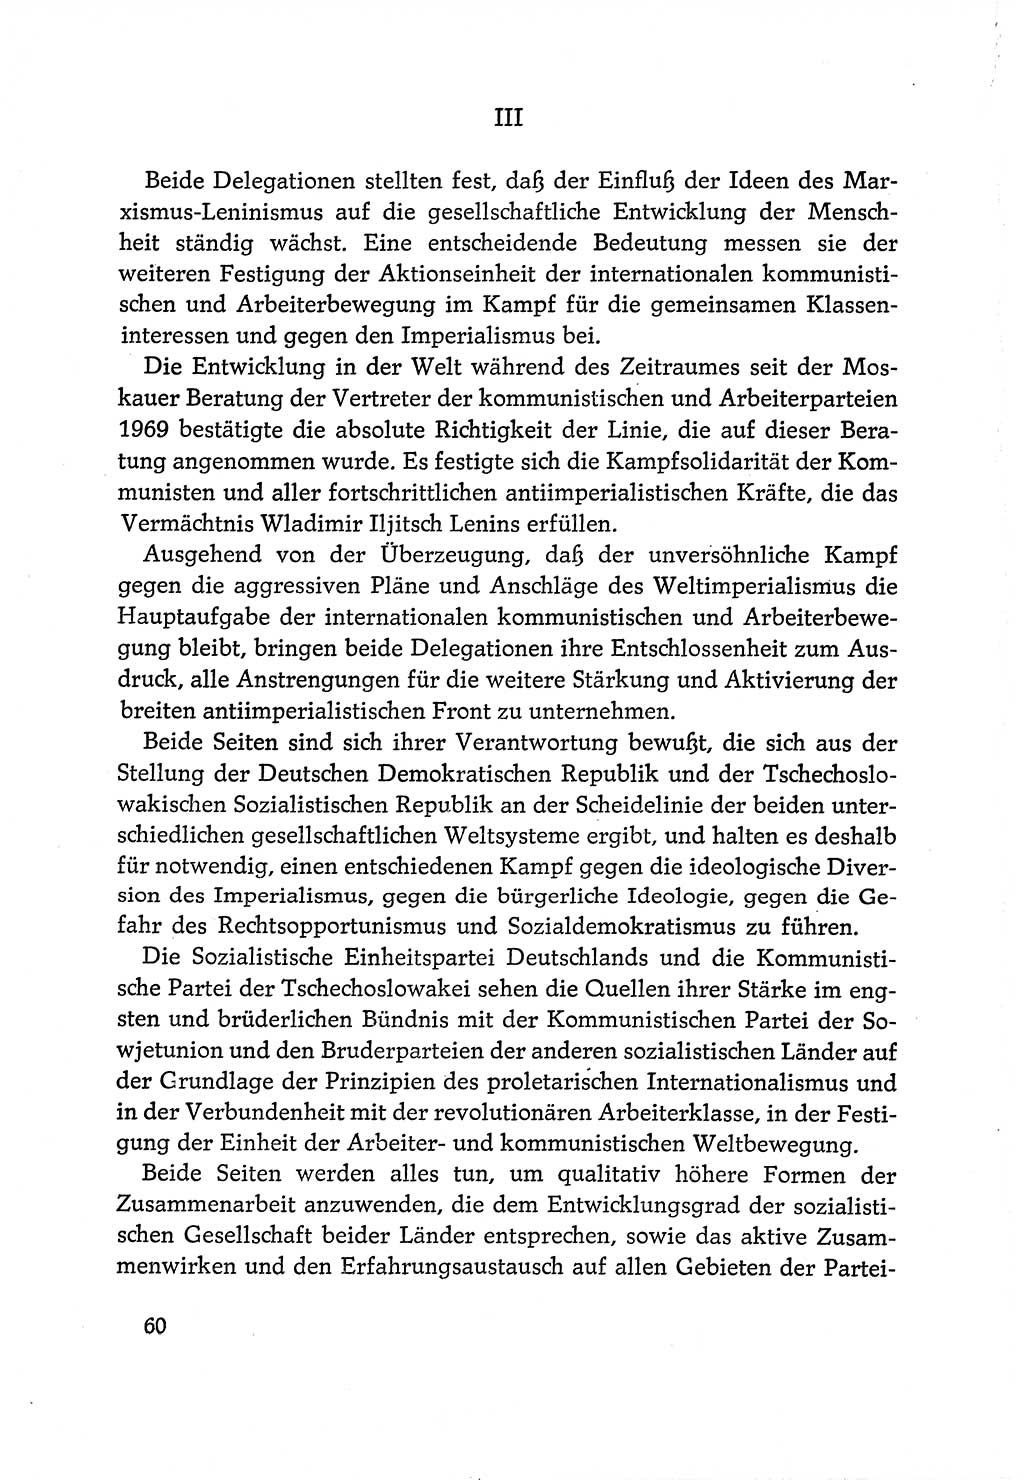 Dokumente der Sozialistischen Einheitspartei Deutschlands (SED) [Deutsche Demokratische Republik (DDR)] 1970-1971, Seite 60 (Dok. SED DDR 1970-1971, S. 60)